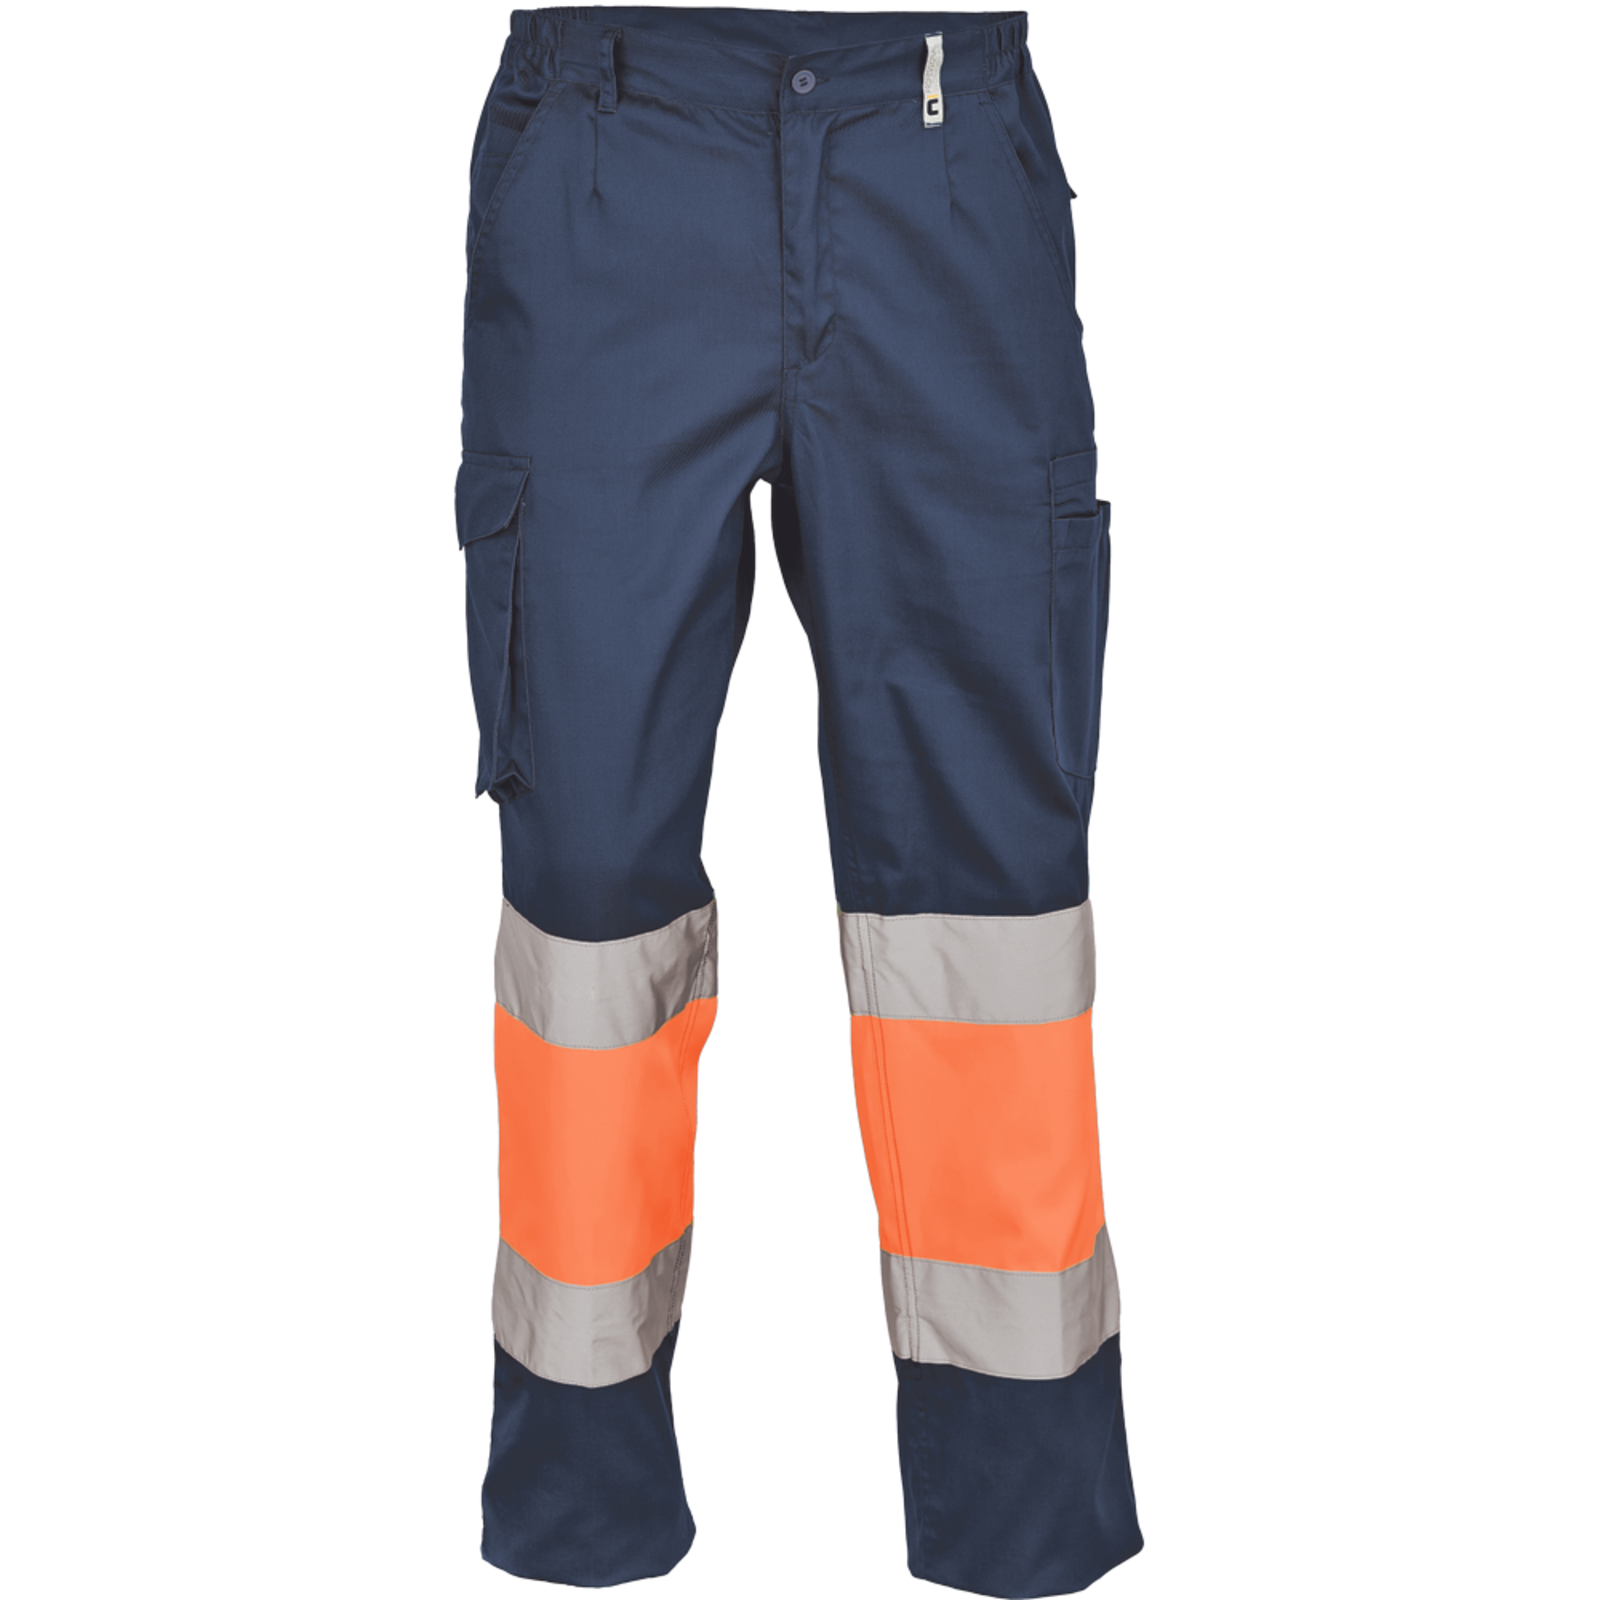 Pracovné reflexné nohavice Cerva Ciudades Bilbao HV - veľkosť: 56, farba: nám. modrá/oranžová